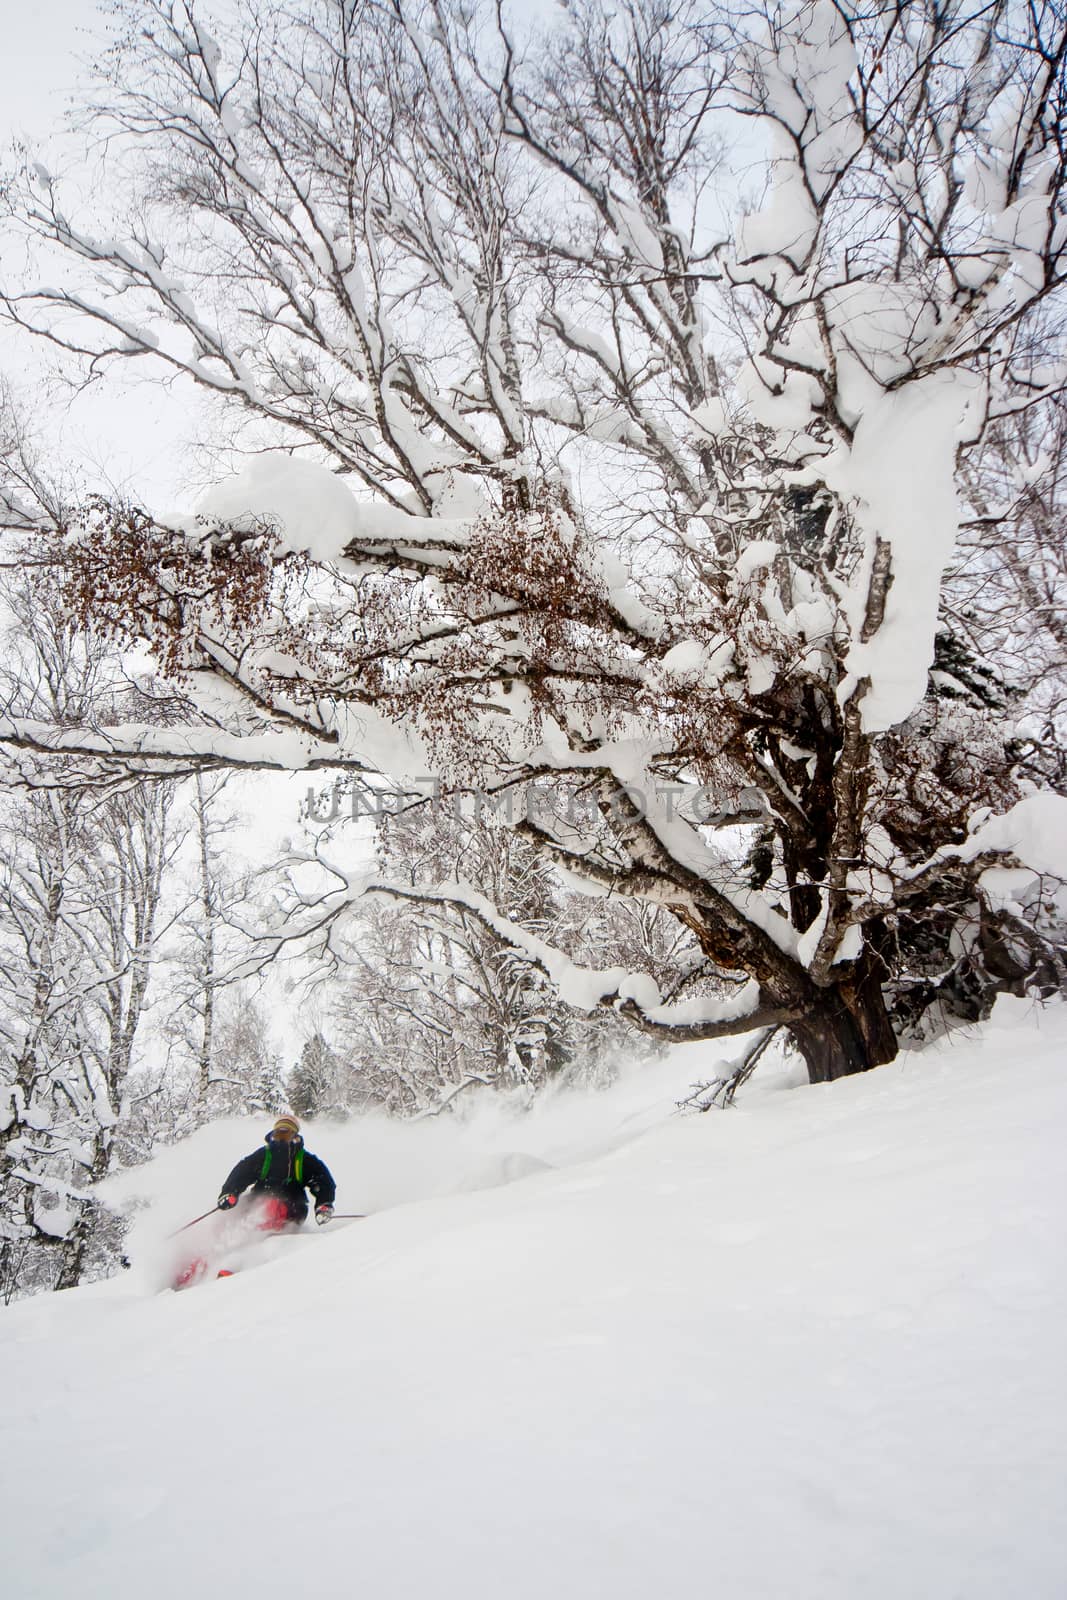 Freerider skiing in Siberia by Chudakov